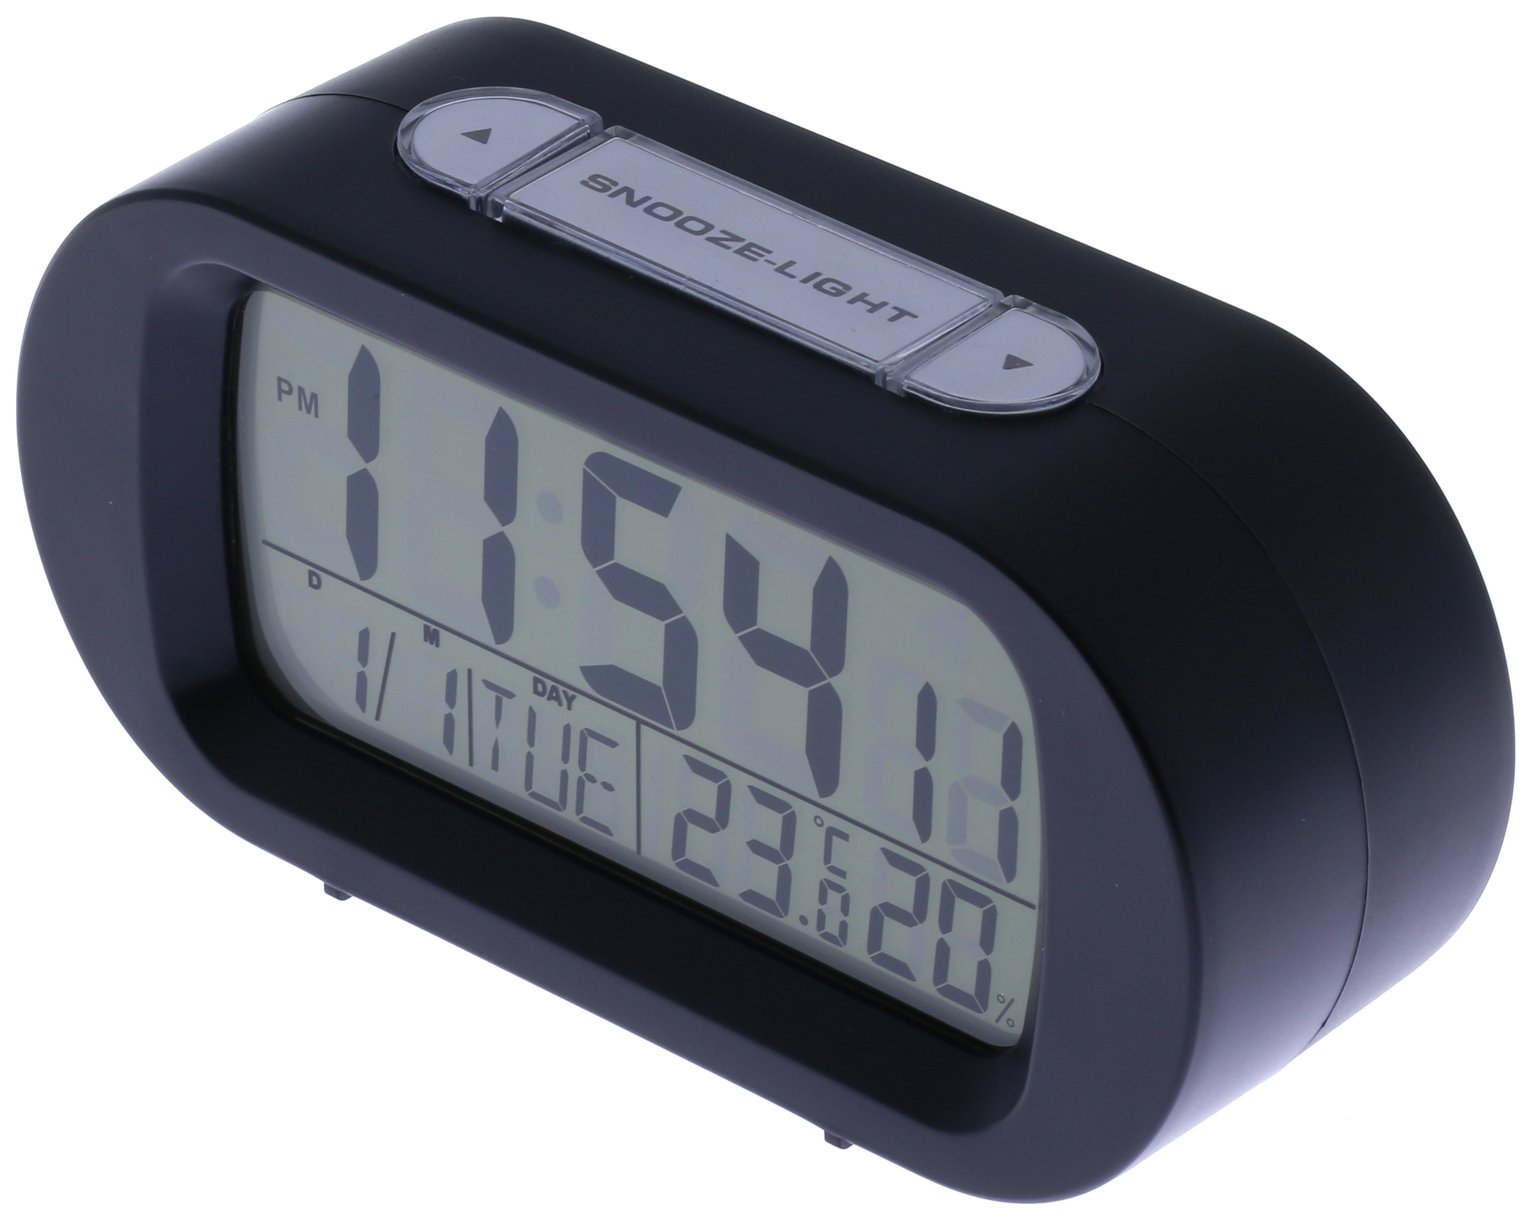 Constant Digital Alarm Clock Review